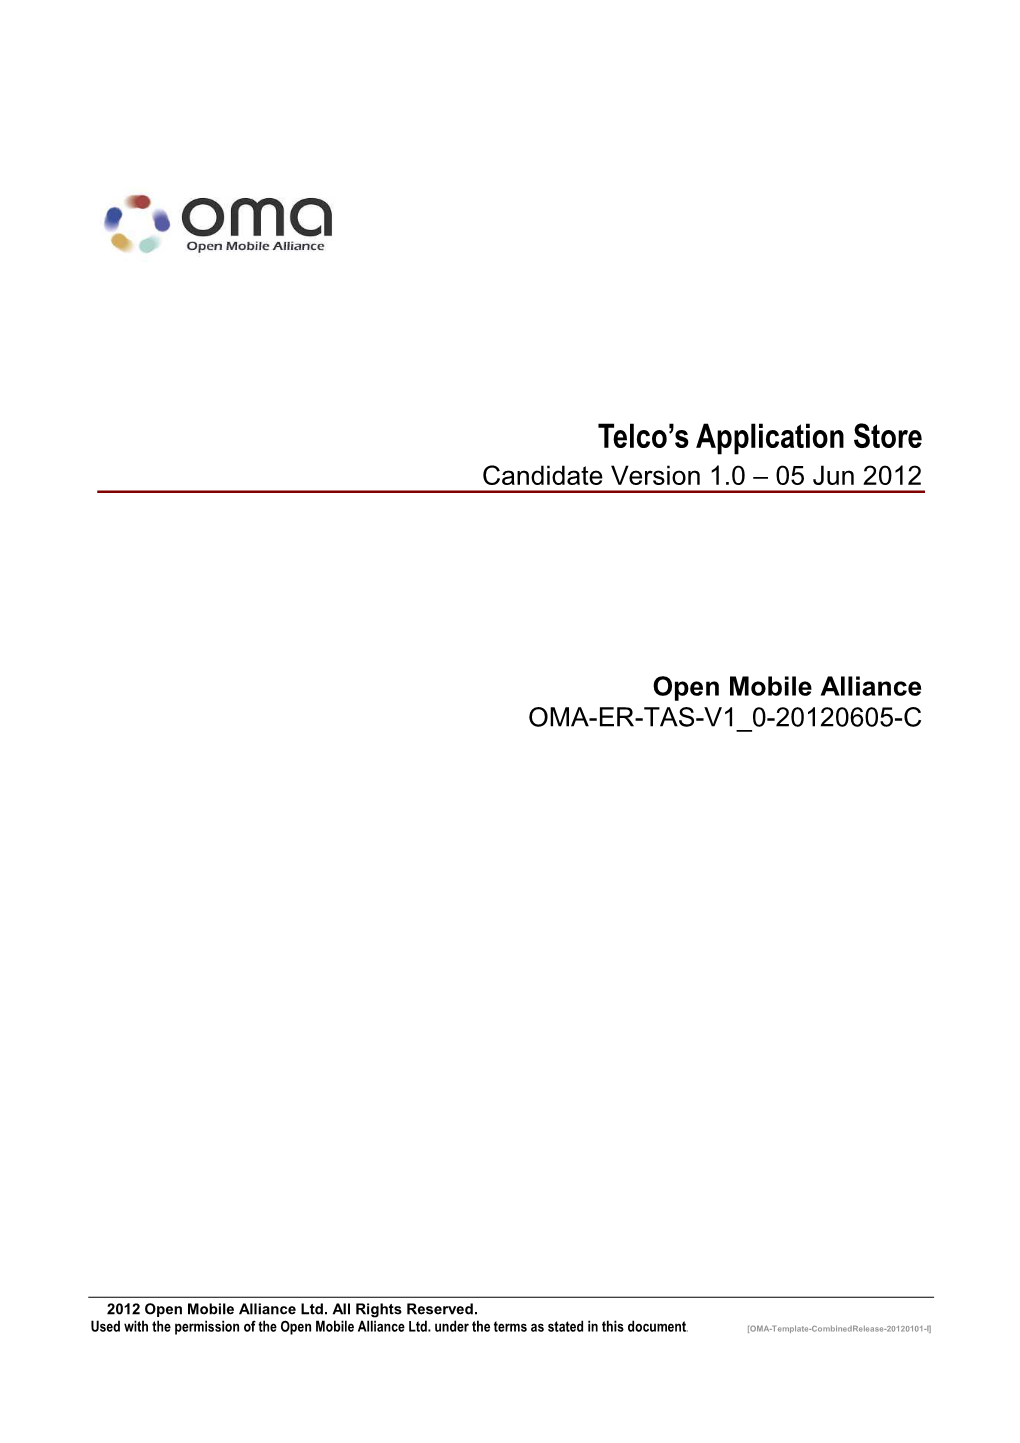 Open Mobile Alliance OMA-ER-TAS-V1 0-20120605-C